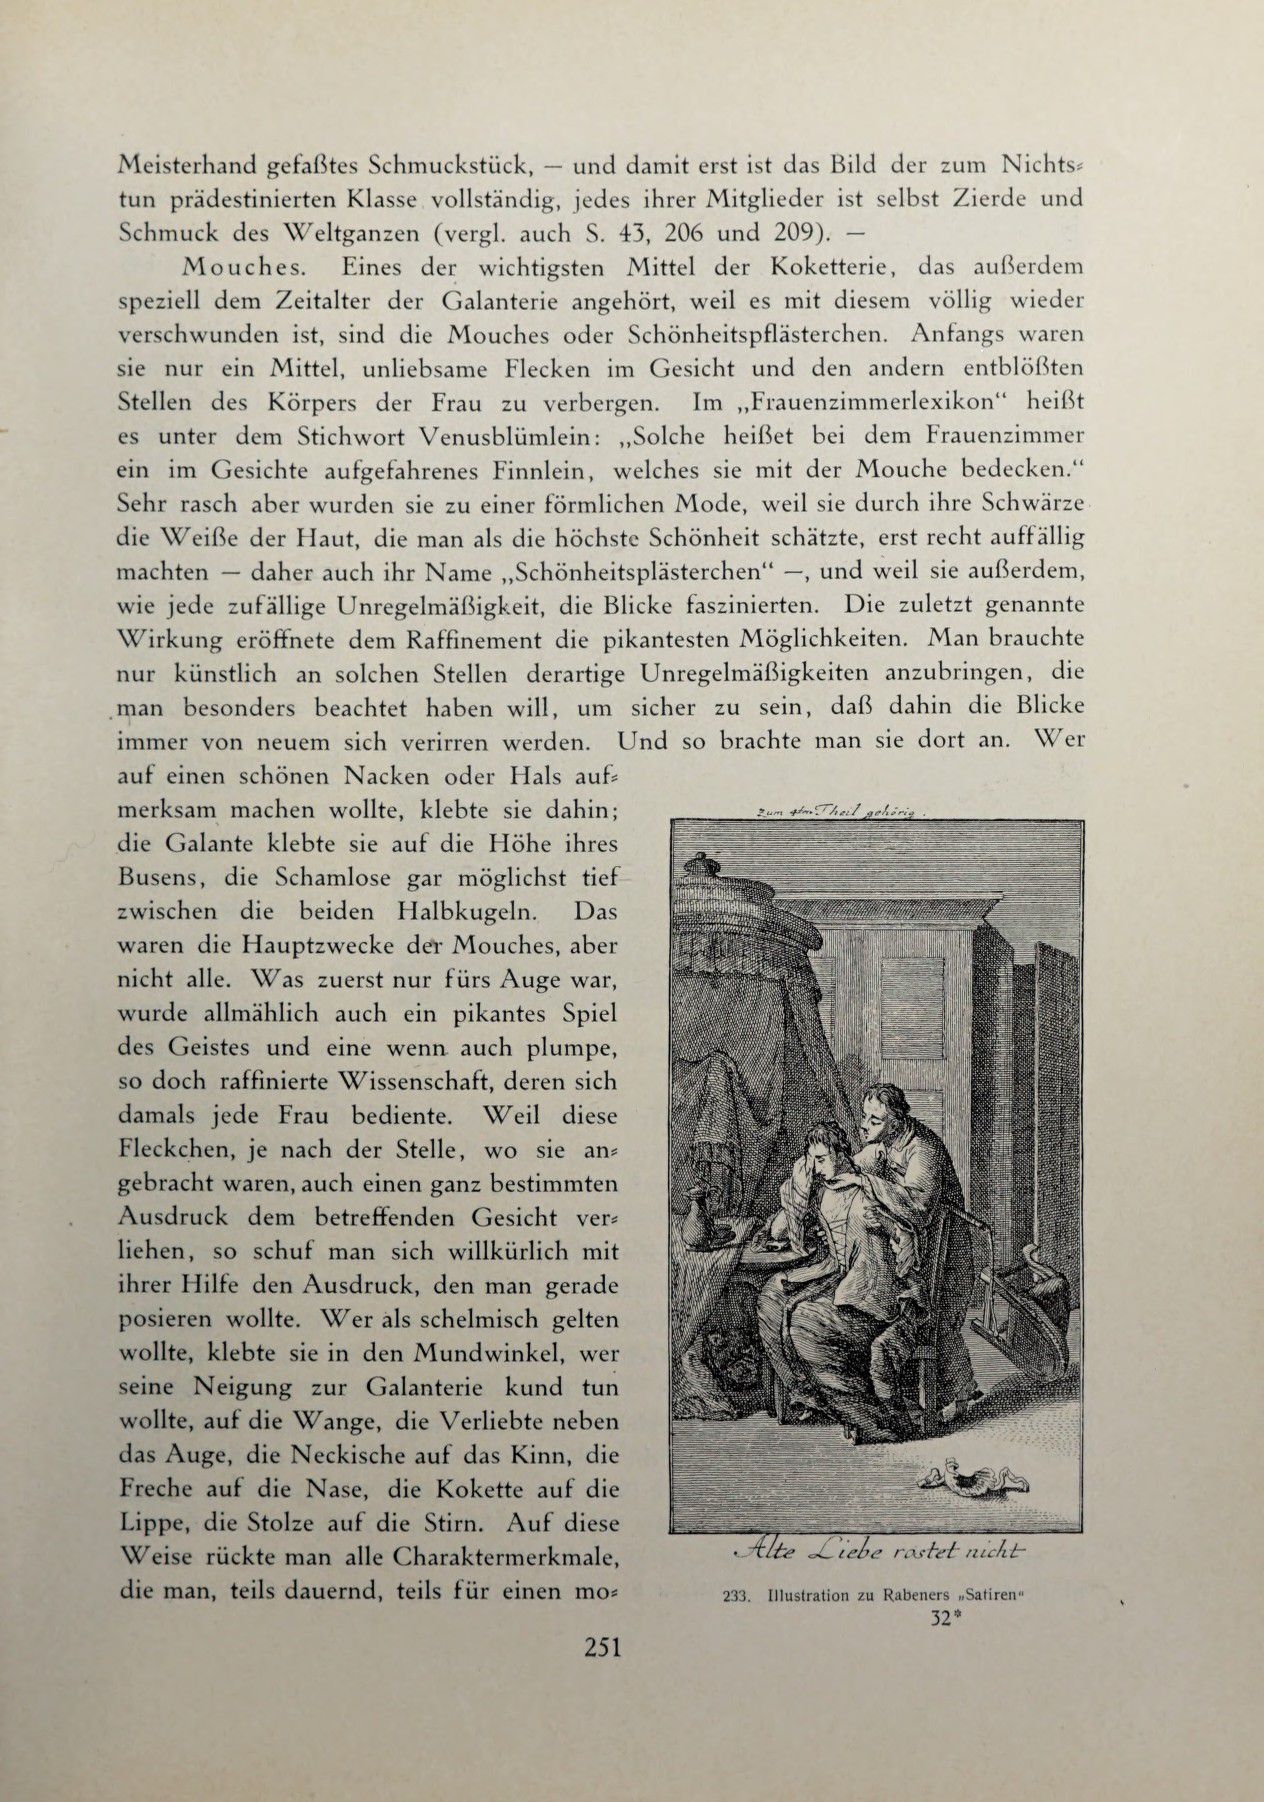 [Eduard Fuchs] Illustrierte Sittengeschichte vom Mittelalter bis zur Gegenwart: Bd. 2. and Ergänzungsband. Die galante Zeit [German] 366